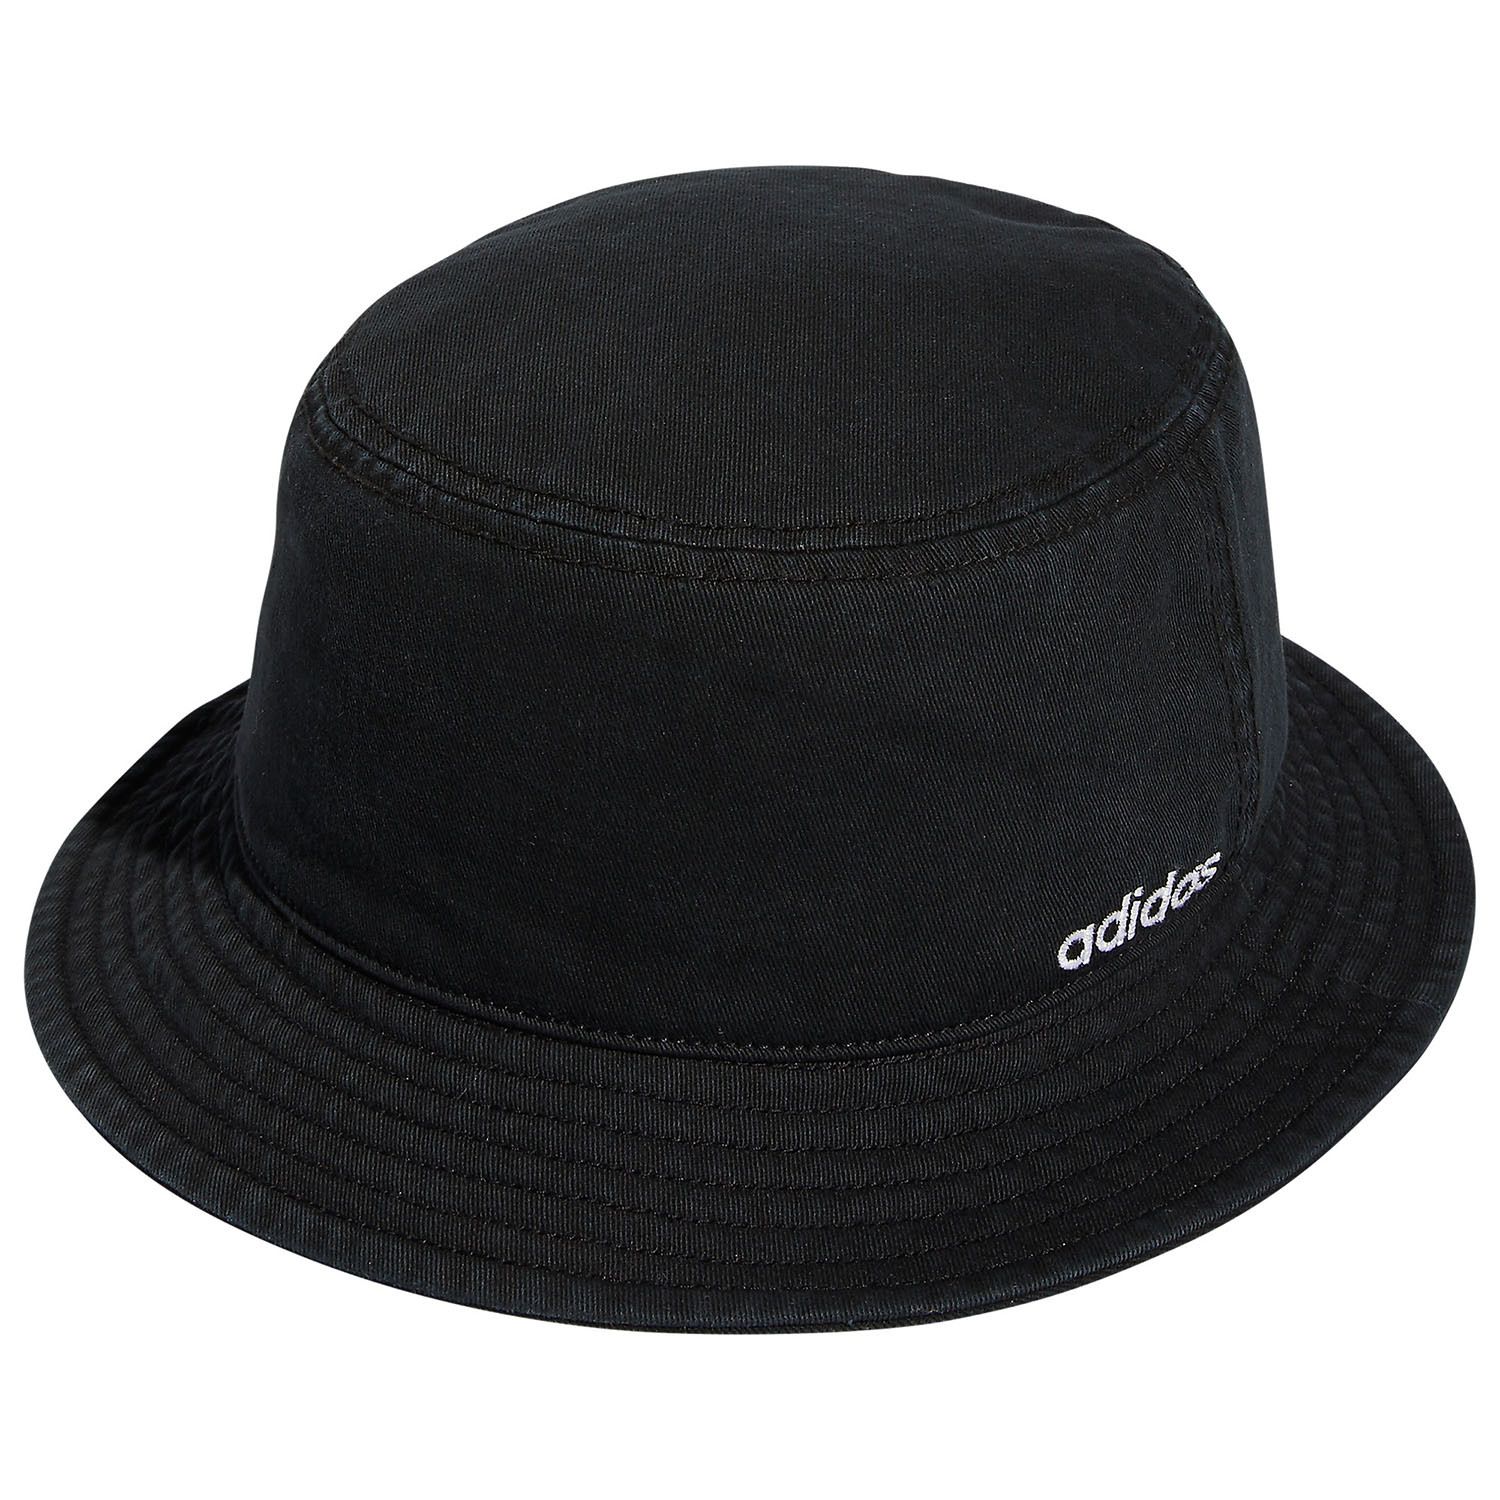 adilette bucket hat